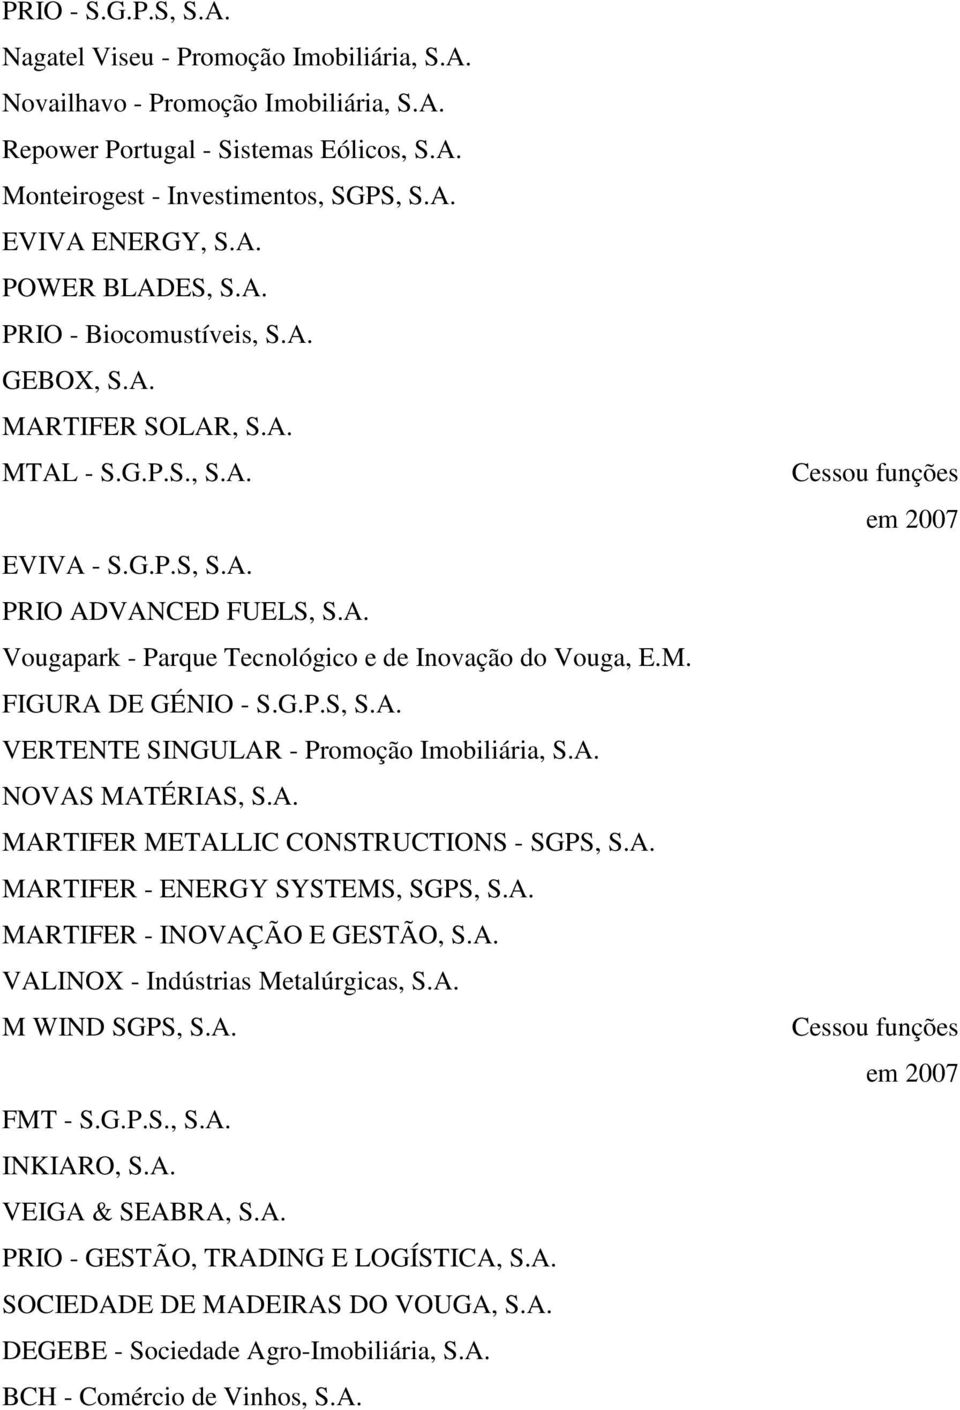 M. FIGURA DE GÉNIO - S.G.P.S, S.A. VERTENTE SINGULAR - Promoção Imobiliária, S.A. NOVAS MATÉRIAS, S.A. MARTIFER METALLIC CONSTRUCTIONS - SGPS, S.A. MARTIFER - ENERGY SYSTEMS, SGPS, S.A. MARTIFER - INOVAÇÃO E GESTÃO, S.